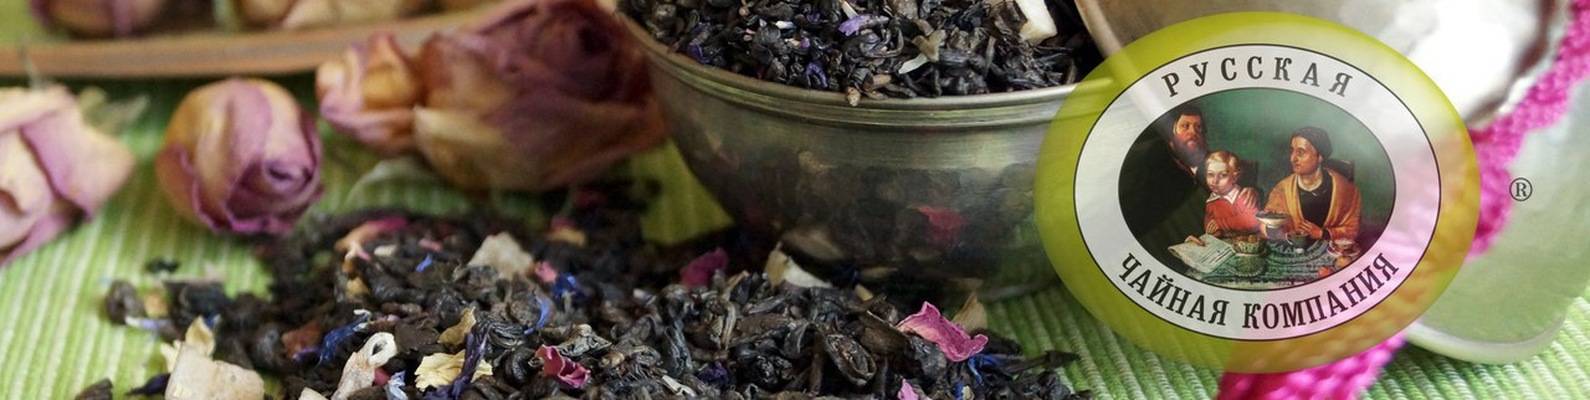 Торговые марки чая: список производителей чайной продукции